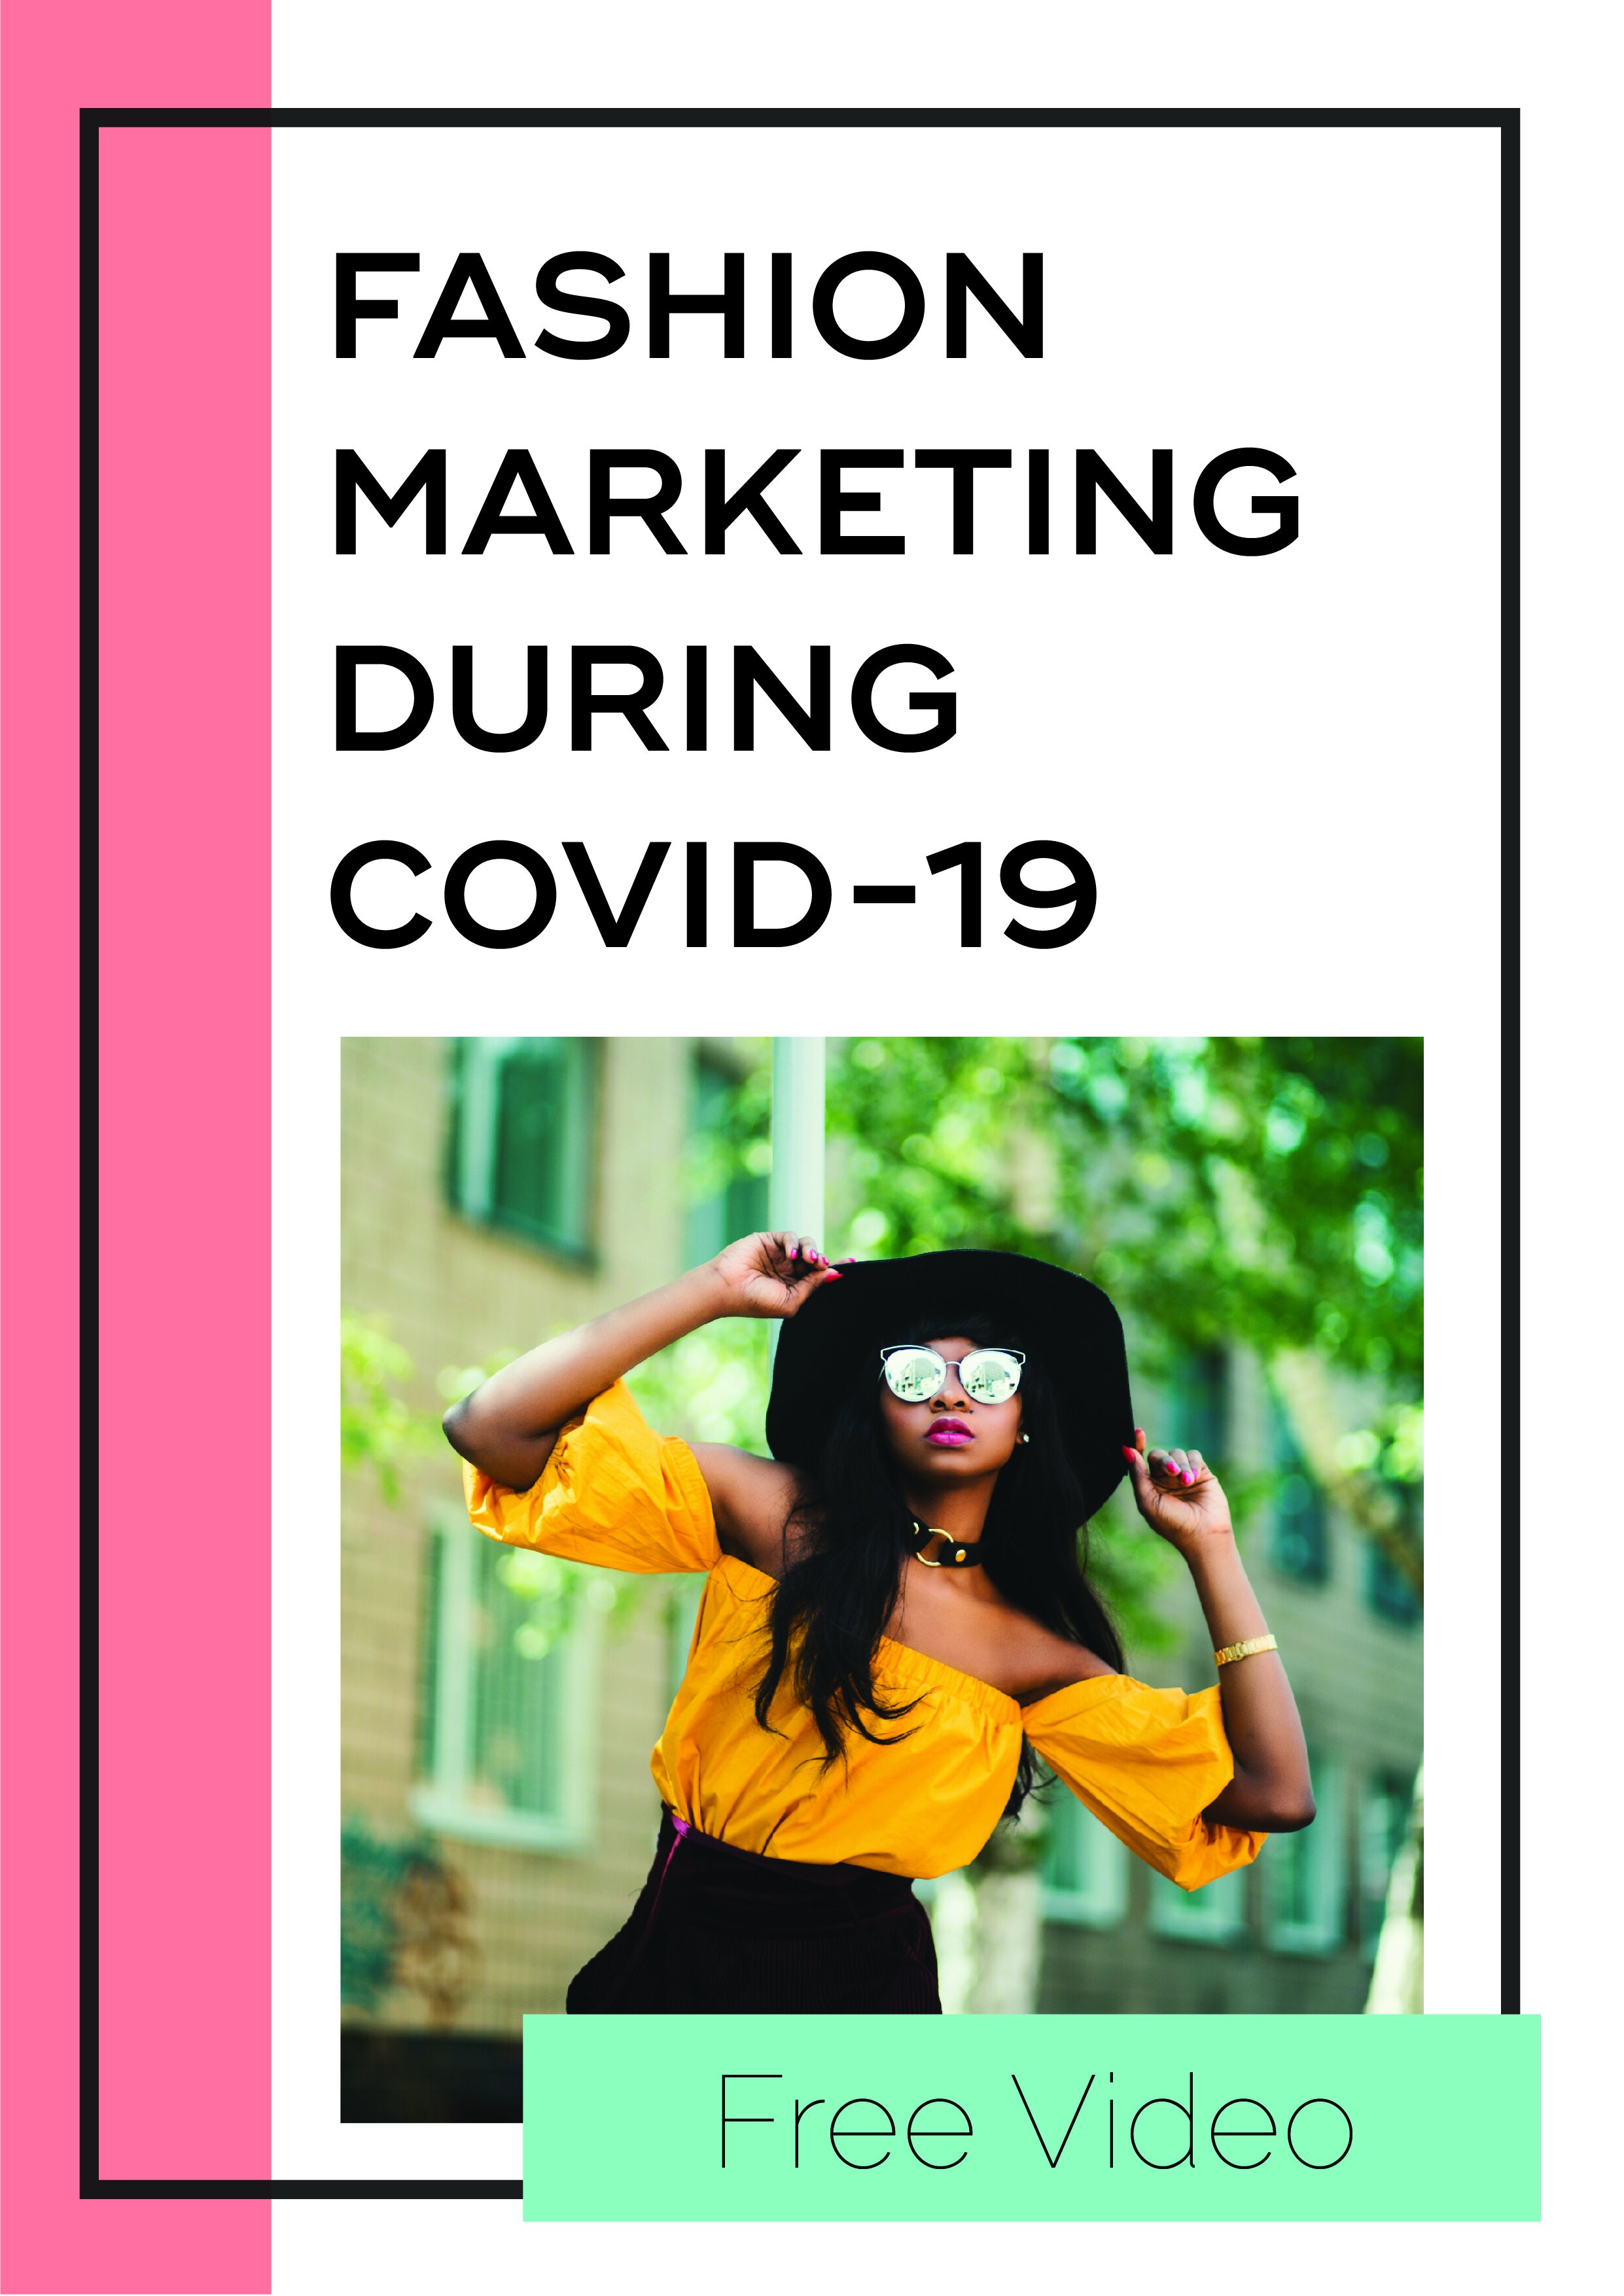 Fashion Marketing During COVID-19 Free Video 1.jpg